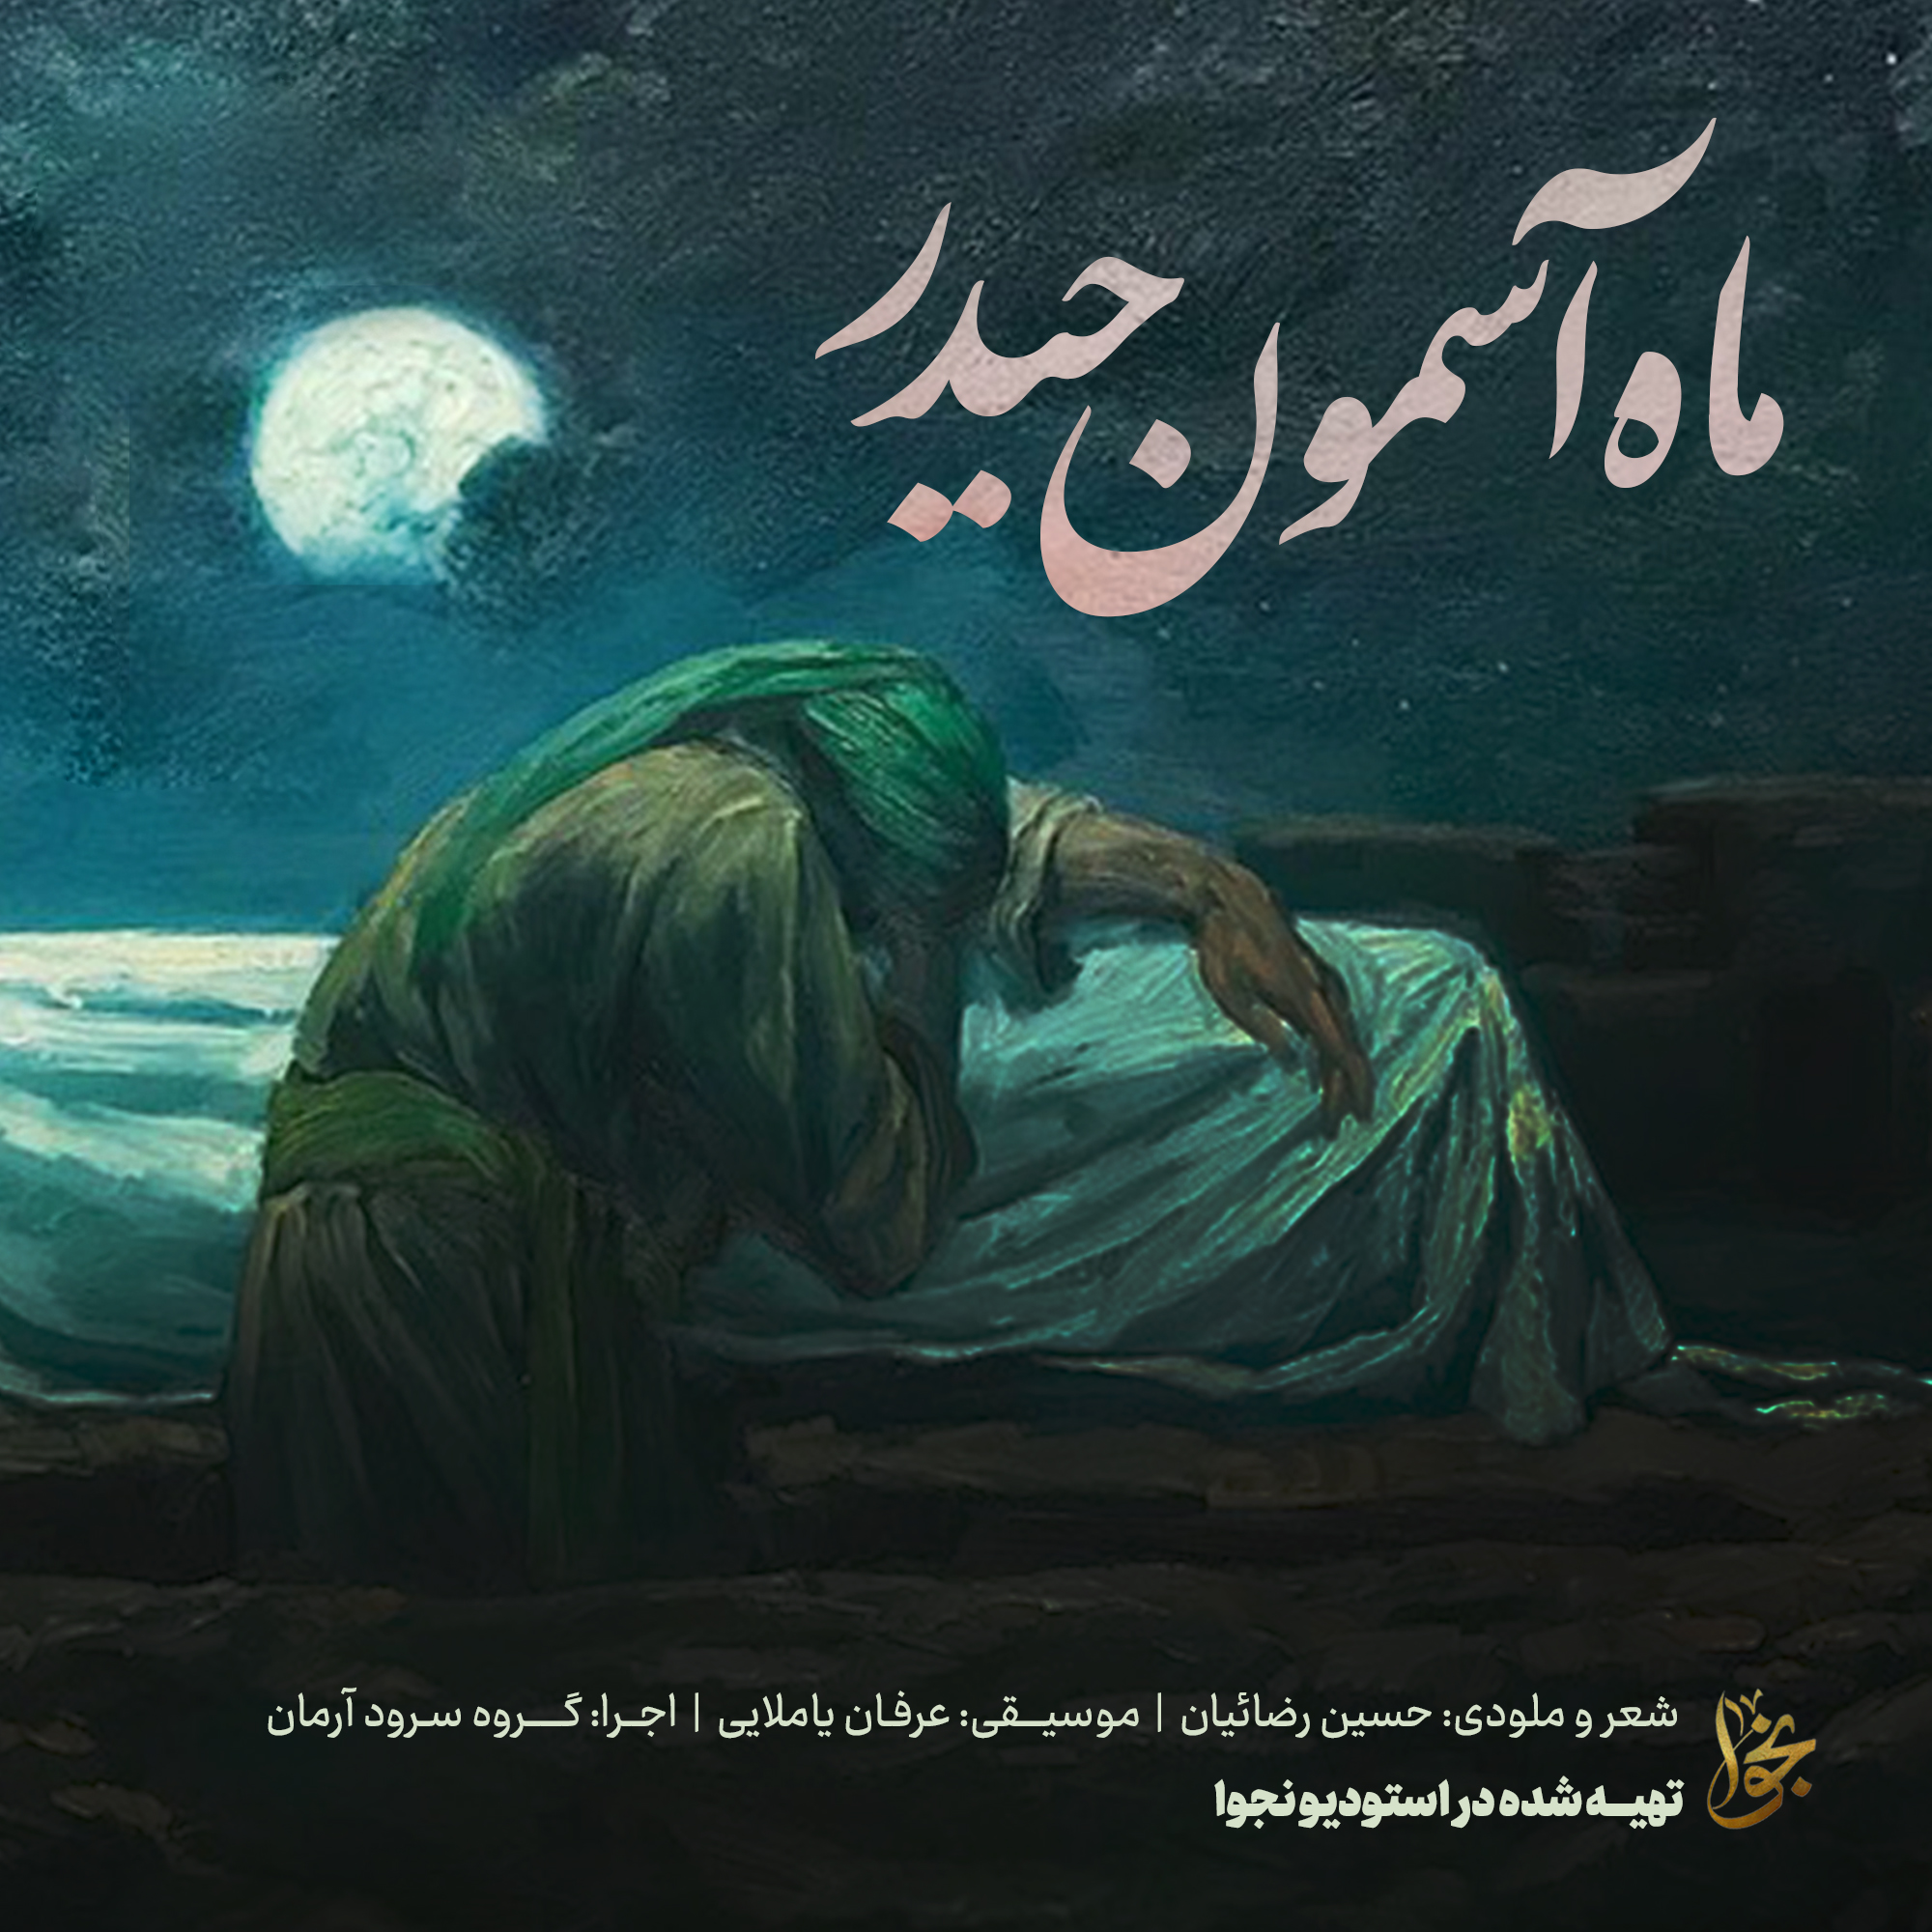 ماه آسمون حیدر - با شعری از حسین رضائیان